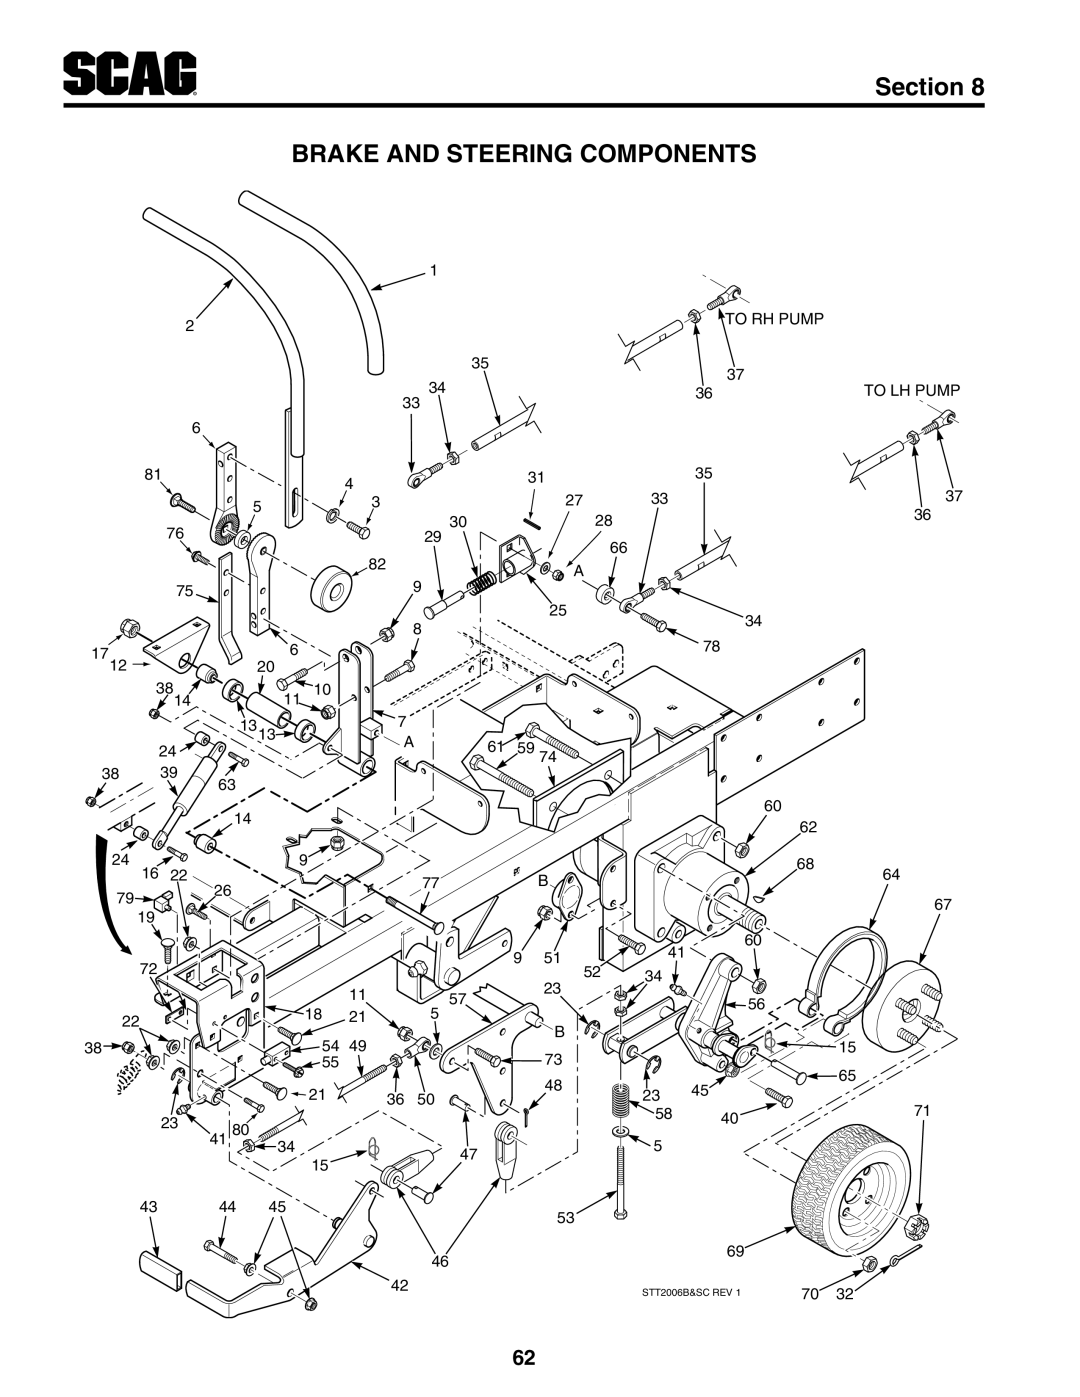 Scag Power Equipment STT61V-29DFI-LE, STT-29DFI, STT61V-35BVAC manual Brake And Steering Components, Section, STT2006B&SC REV 